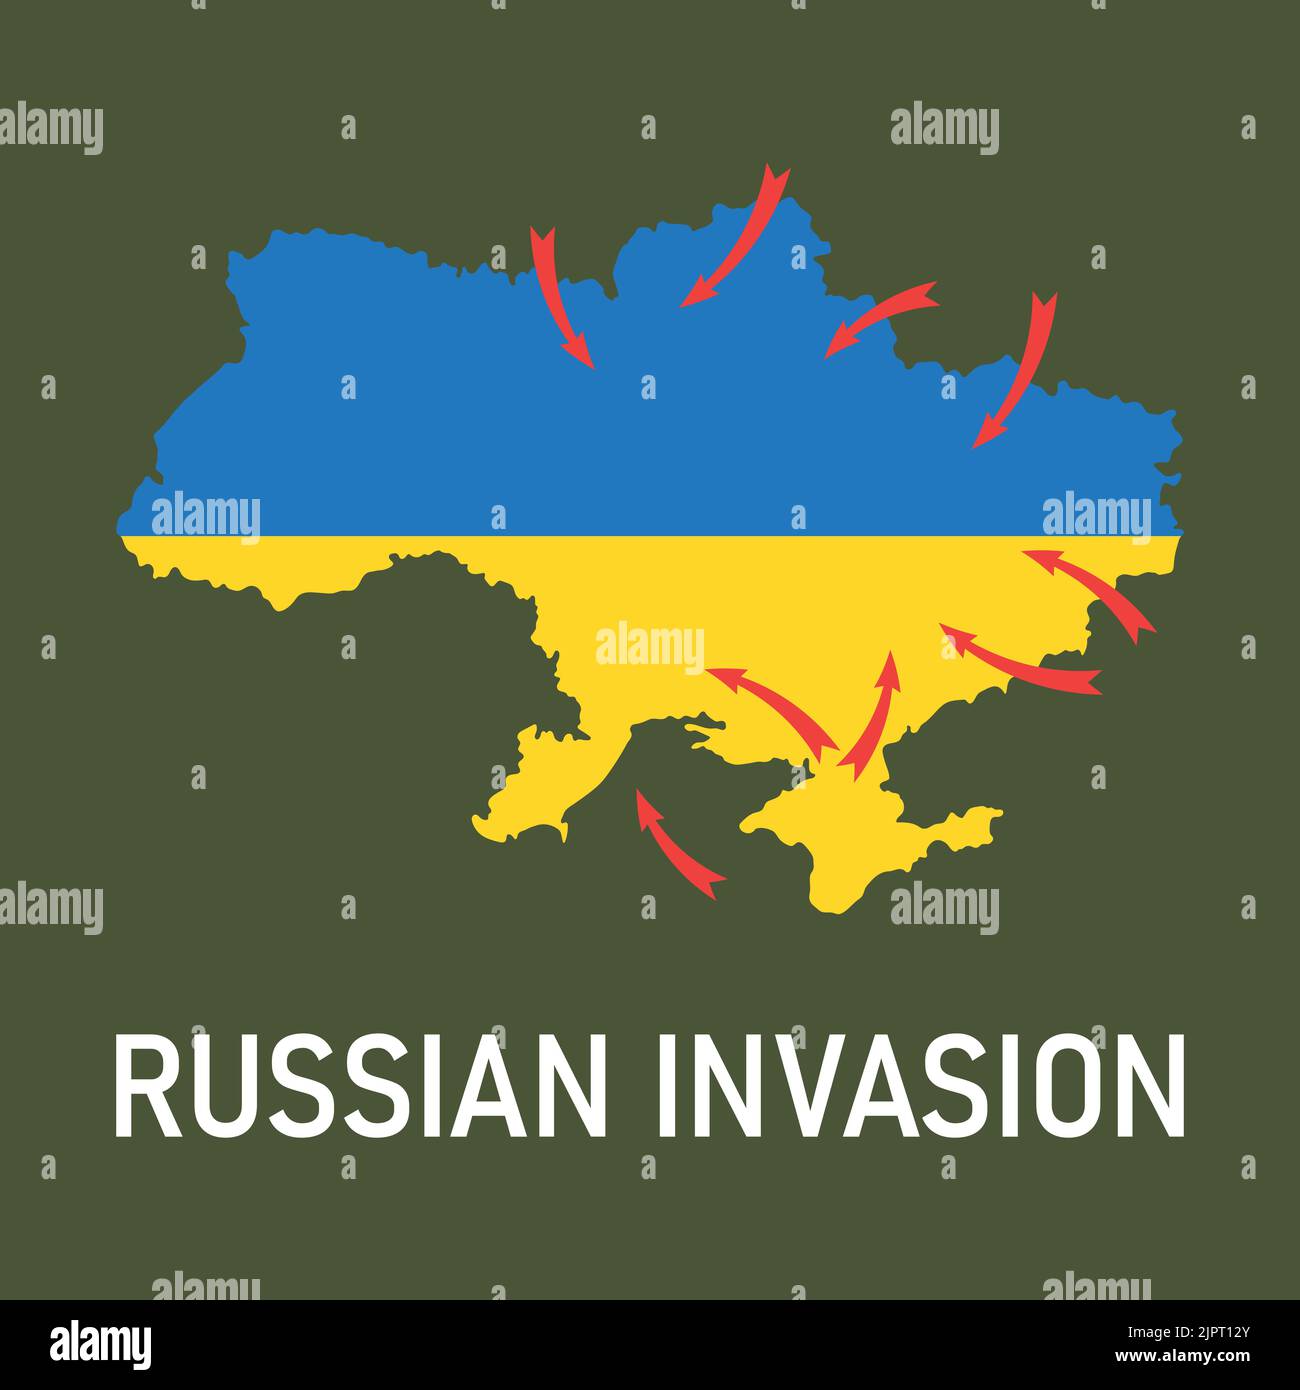 2022 invasione russa dell'Ucraina. Mappa dell'Ucraina nei colori blu e giallo della bandiera Ucraina, frecce rosse di attacchi russi da diverse direzioni Illustrazione Vettoriale